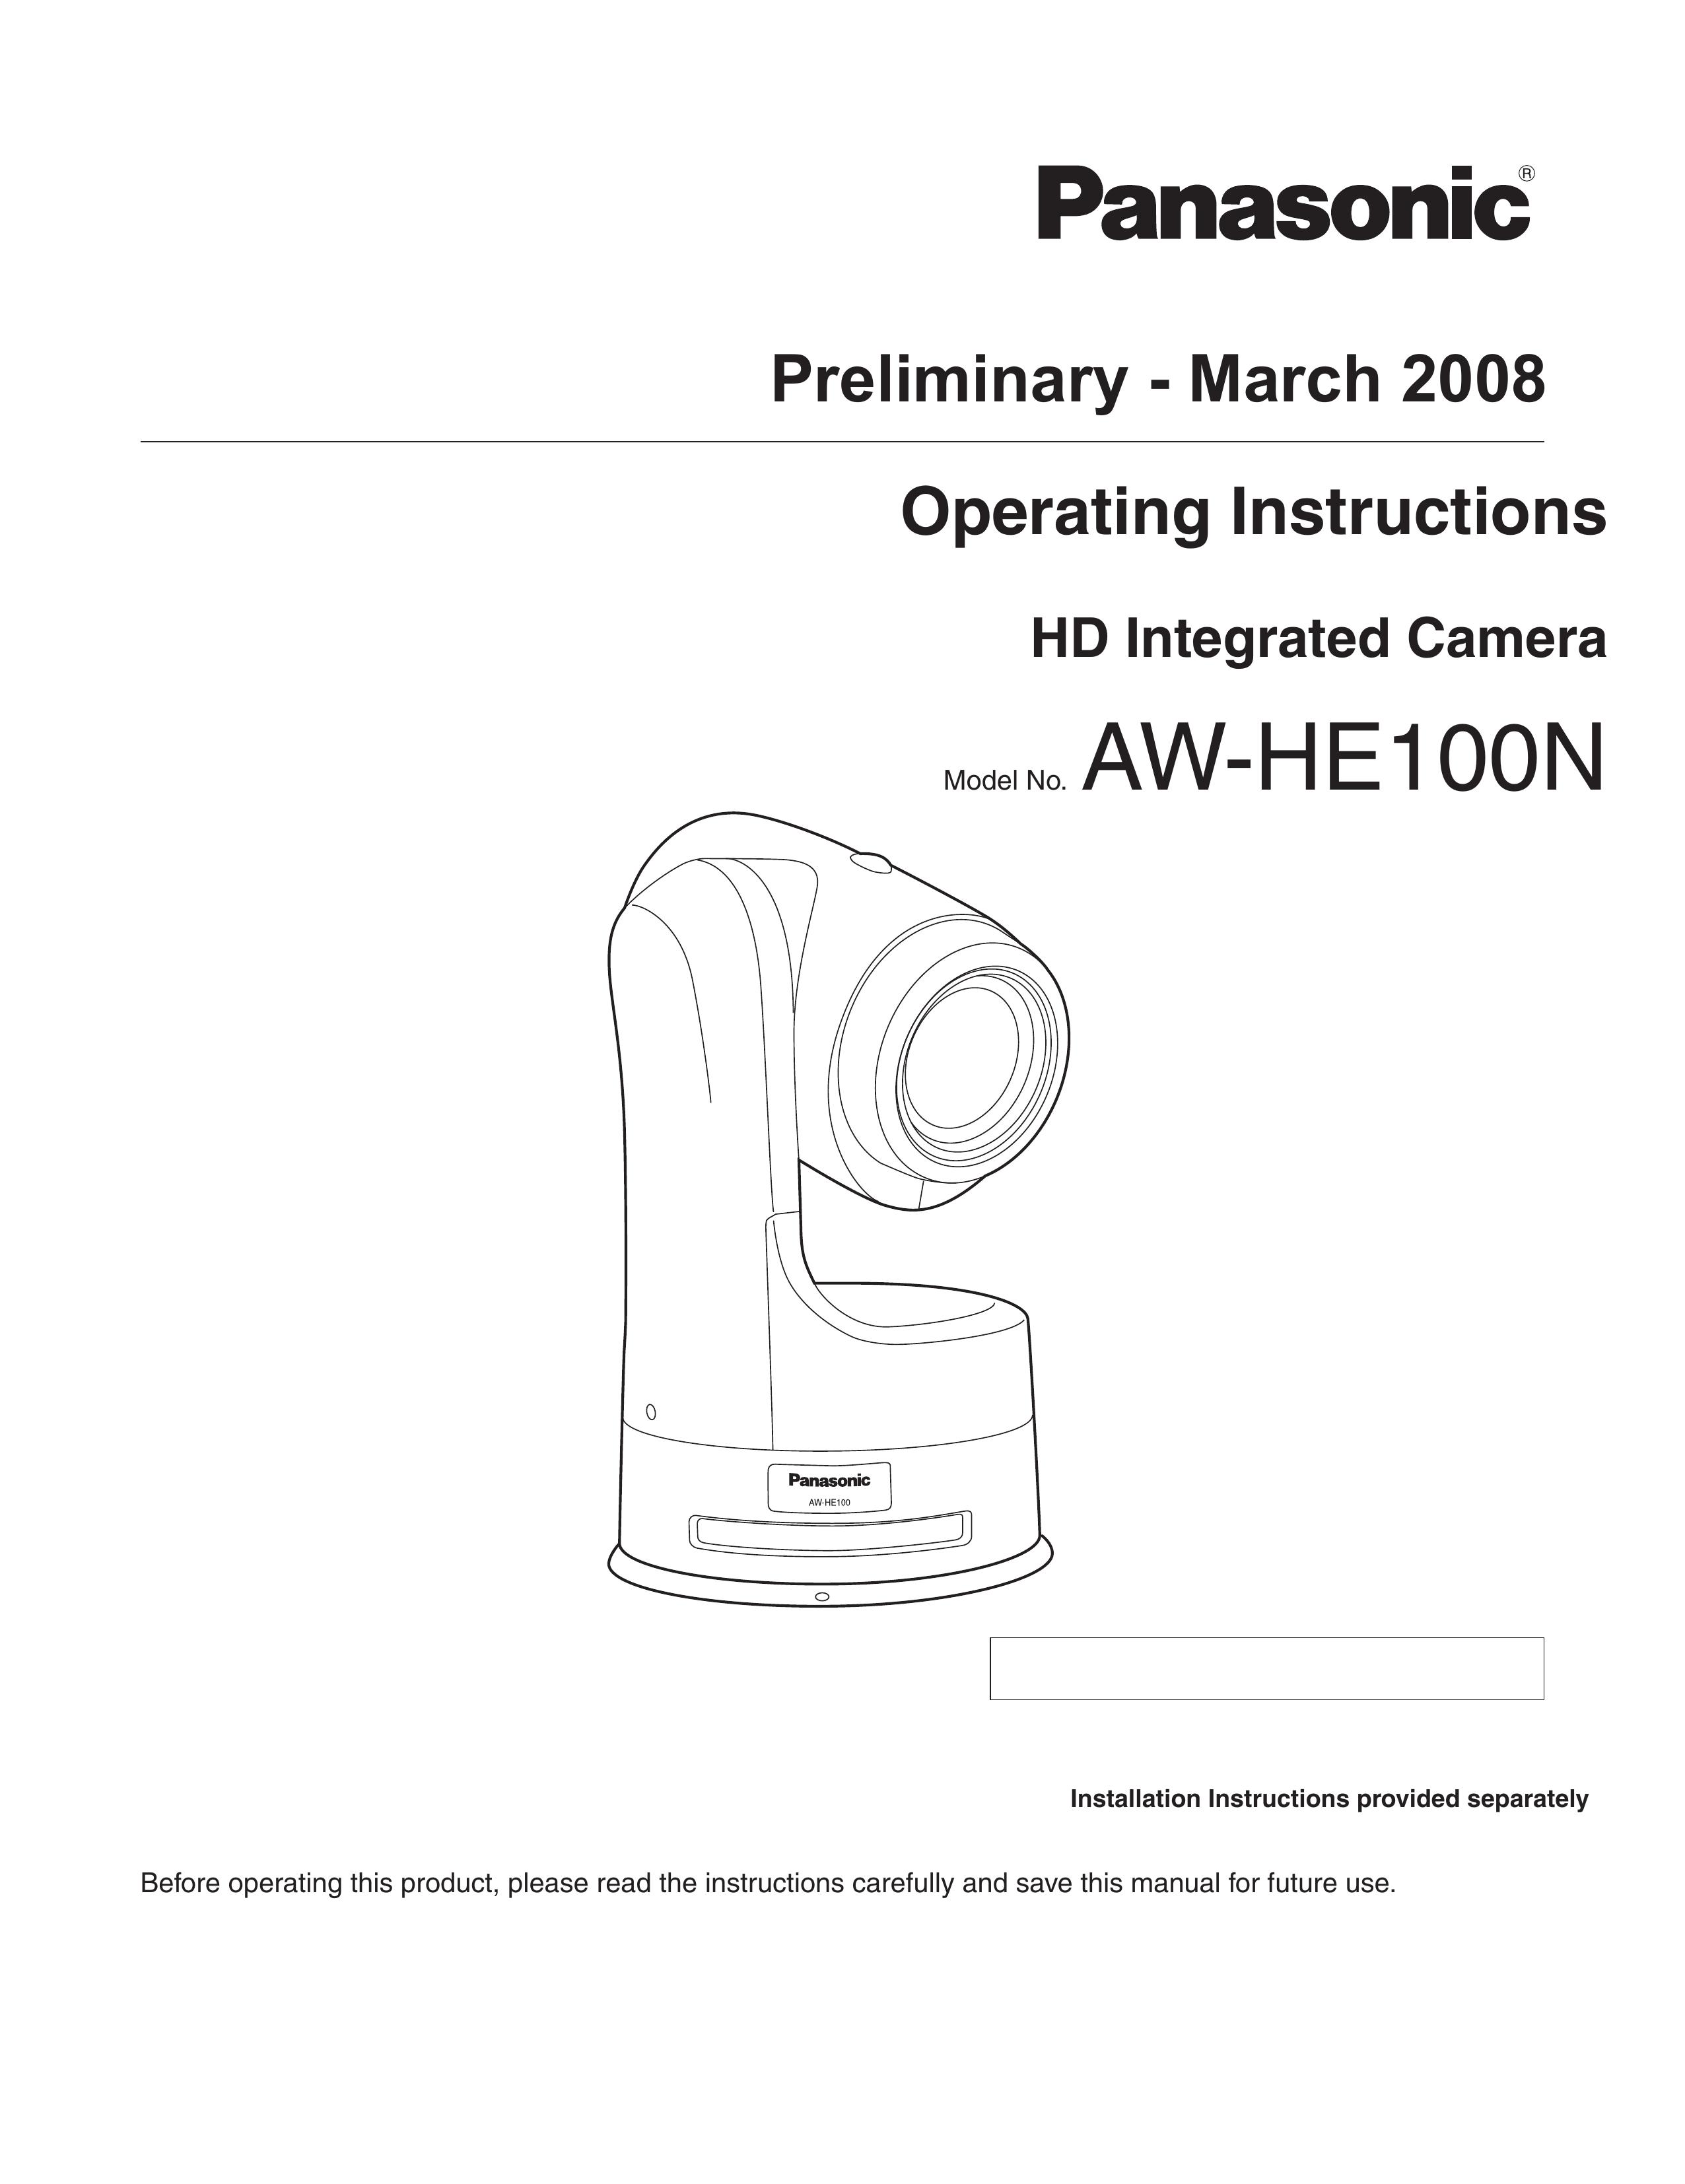 Panasonic AW-HE100N Digital Camera User Manual